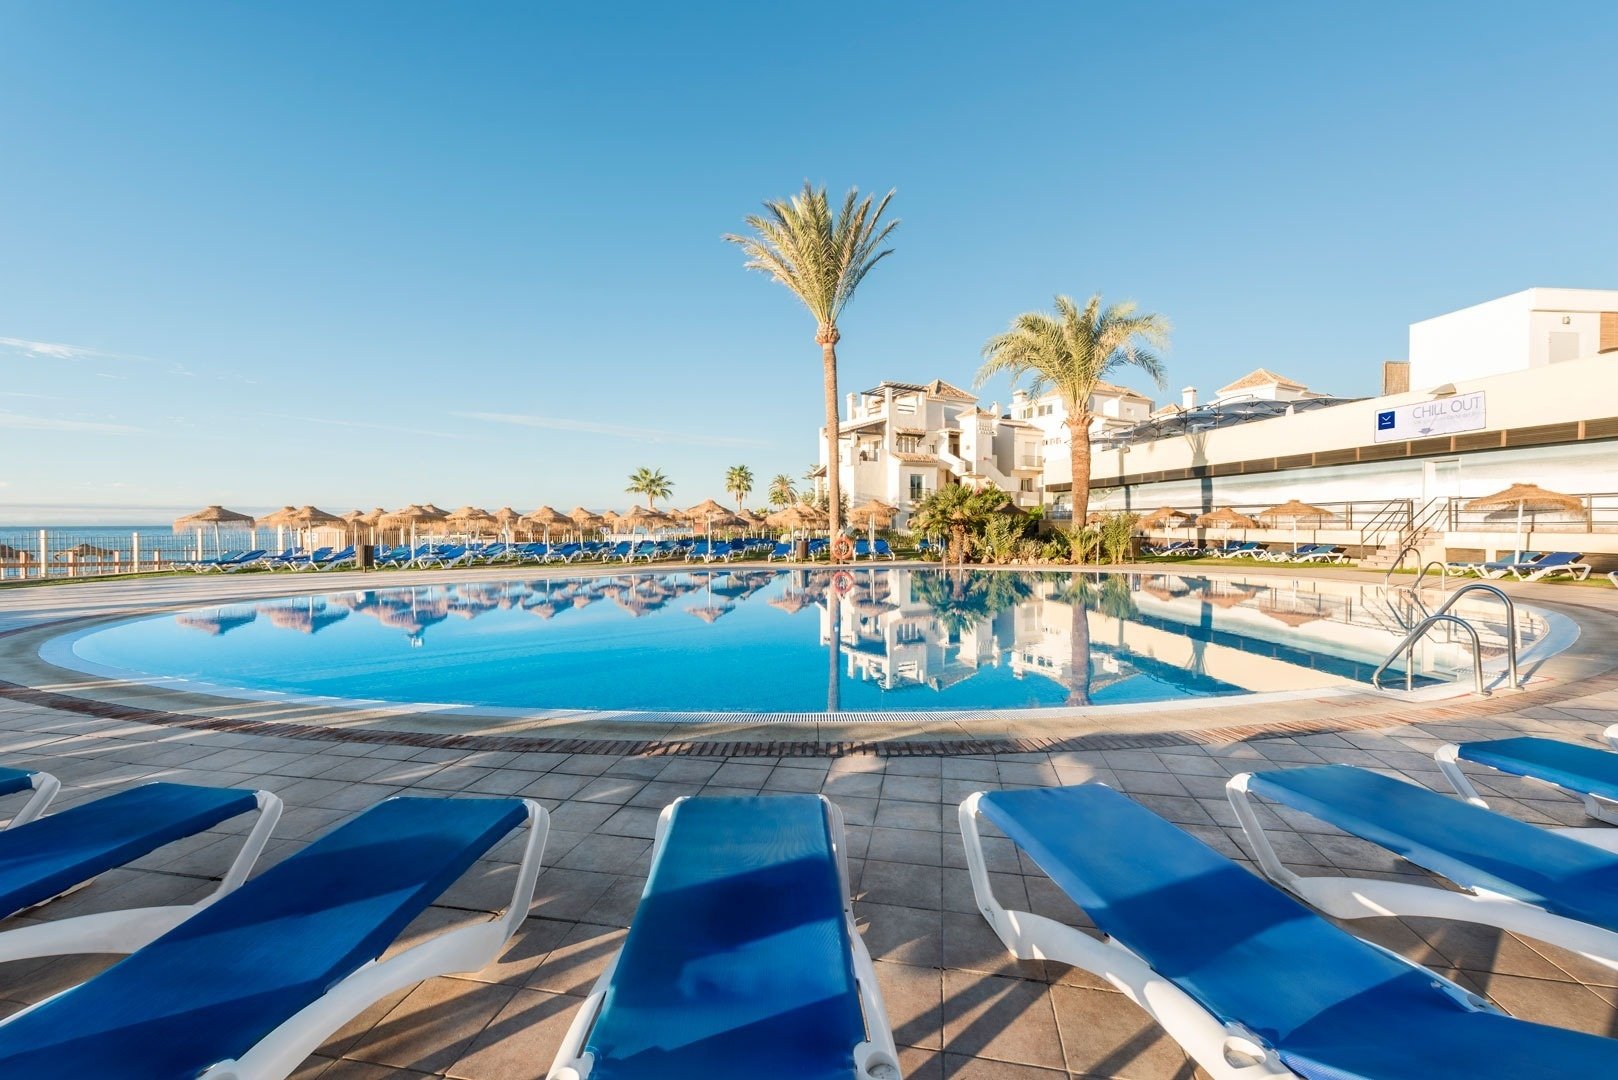 VIK gran hotel Costa del Sol | Web Oficial | Mijas, Málaga | VIK Hotels